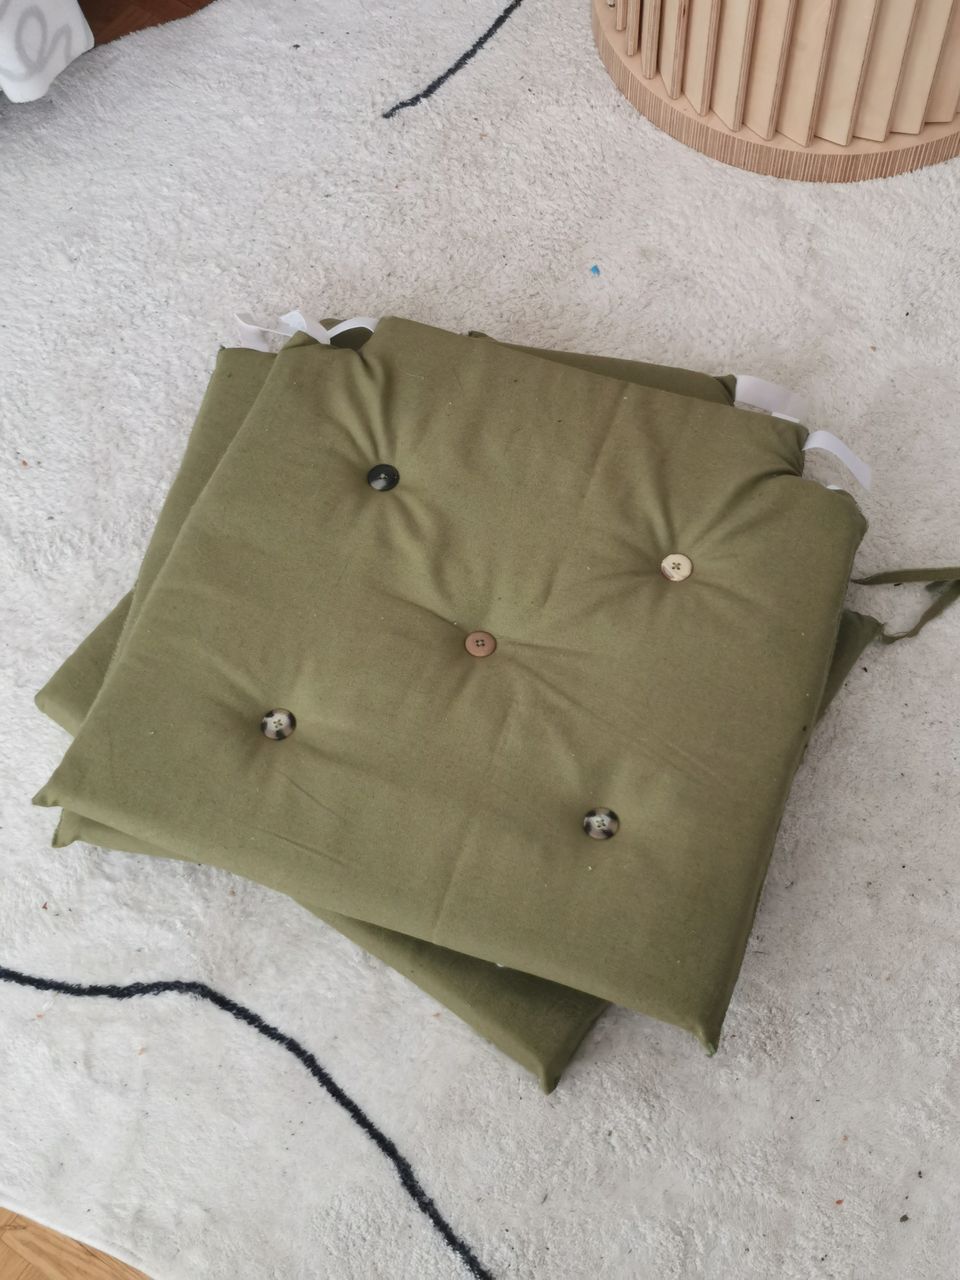 3 chair green cushions